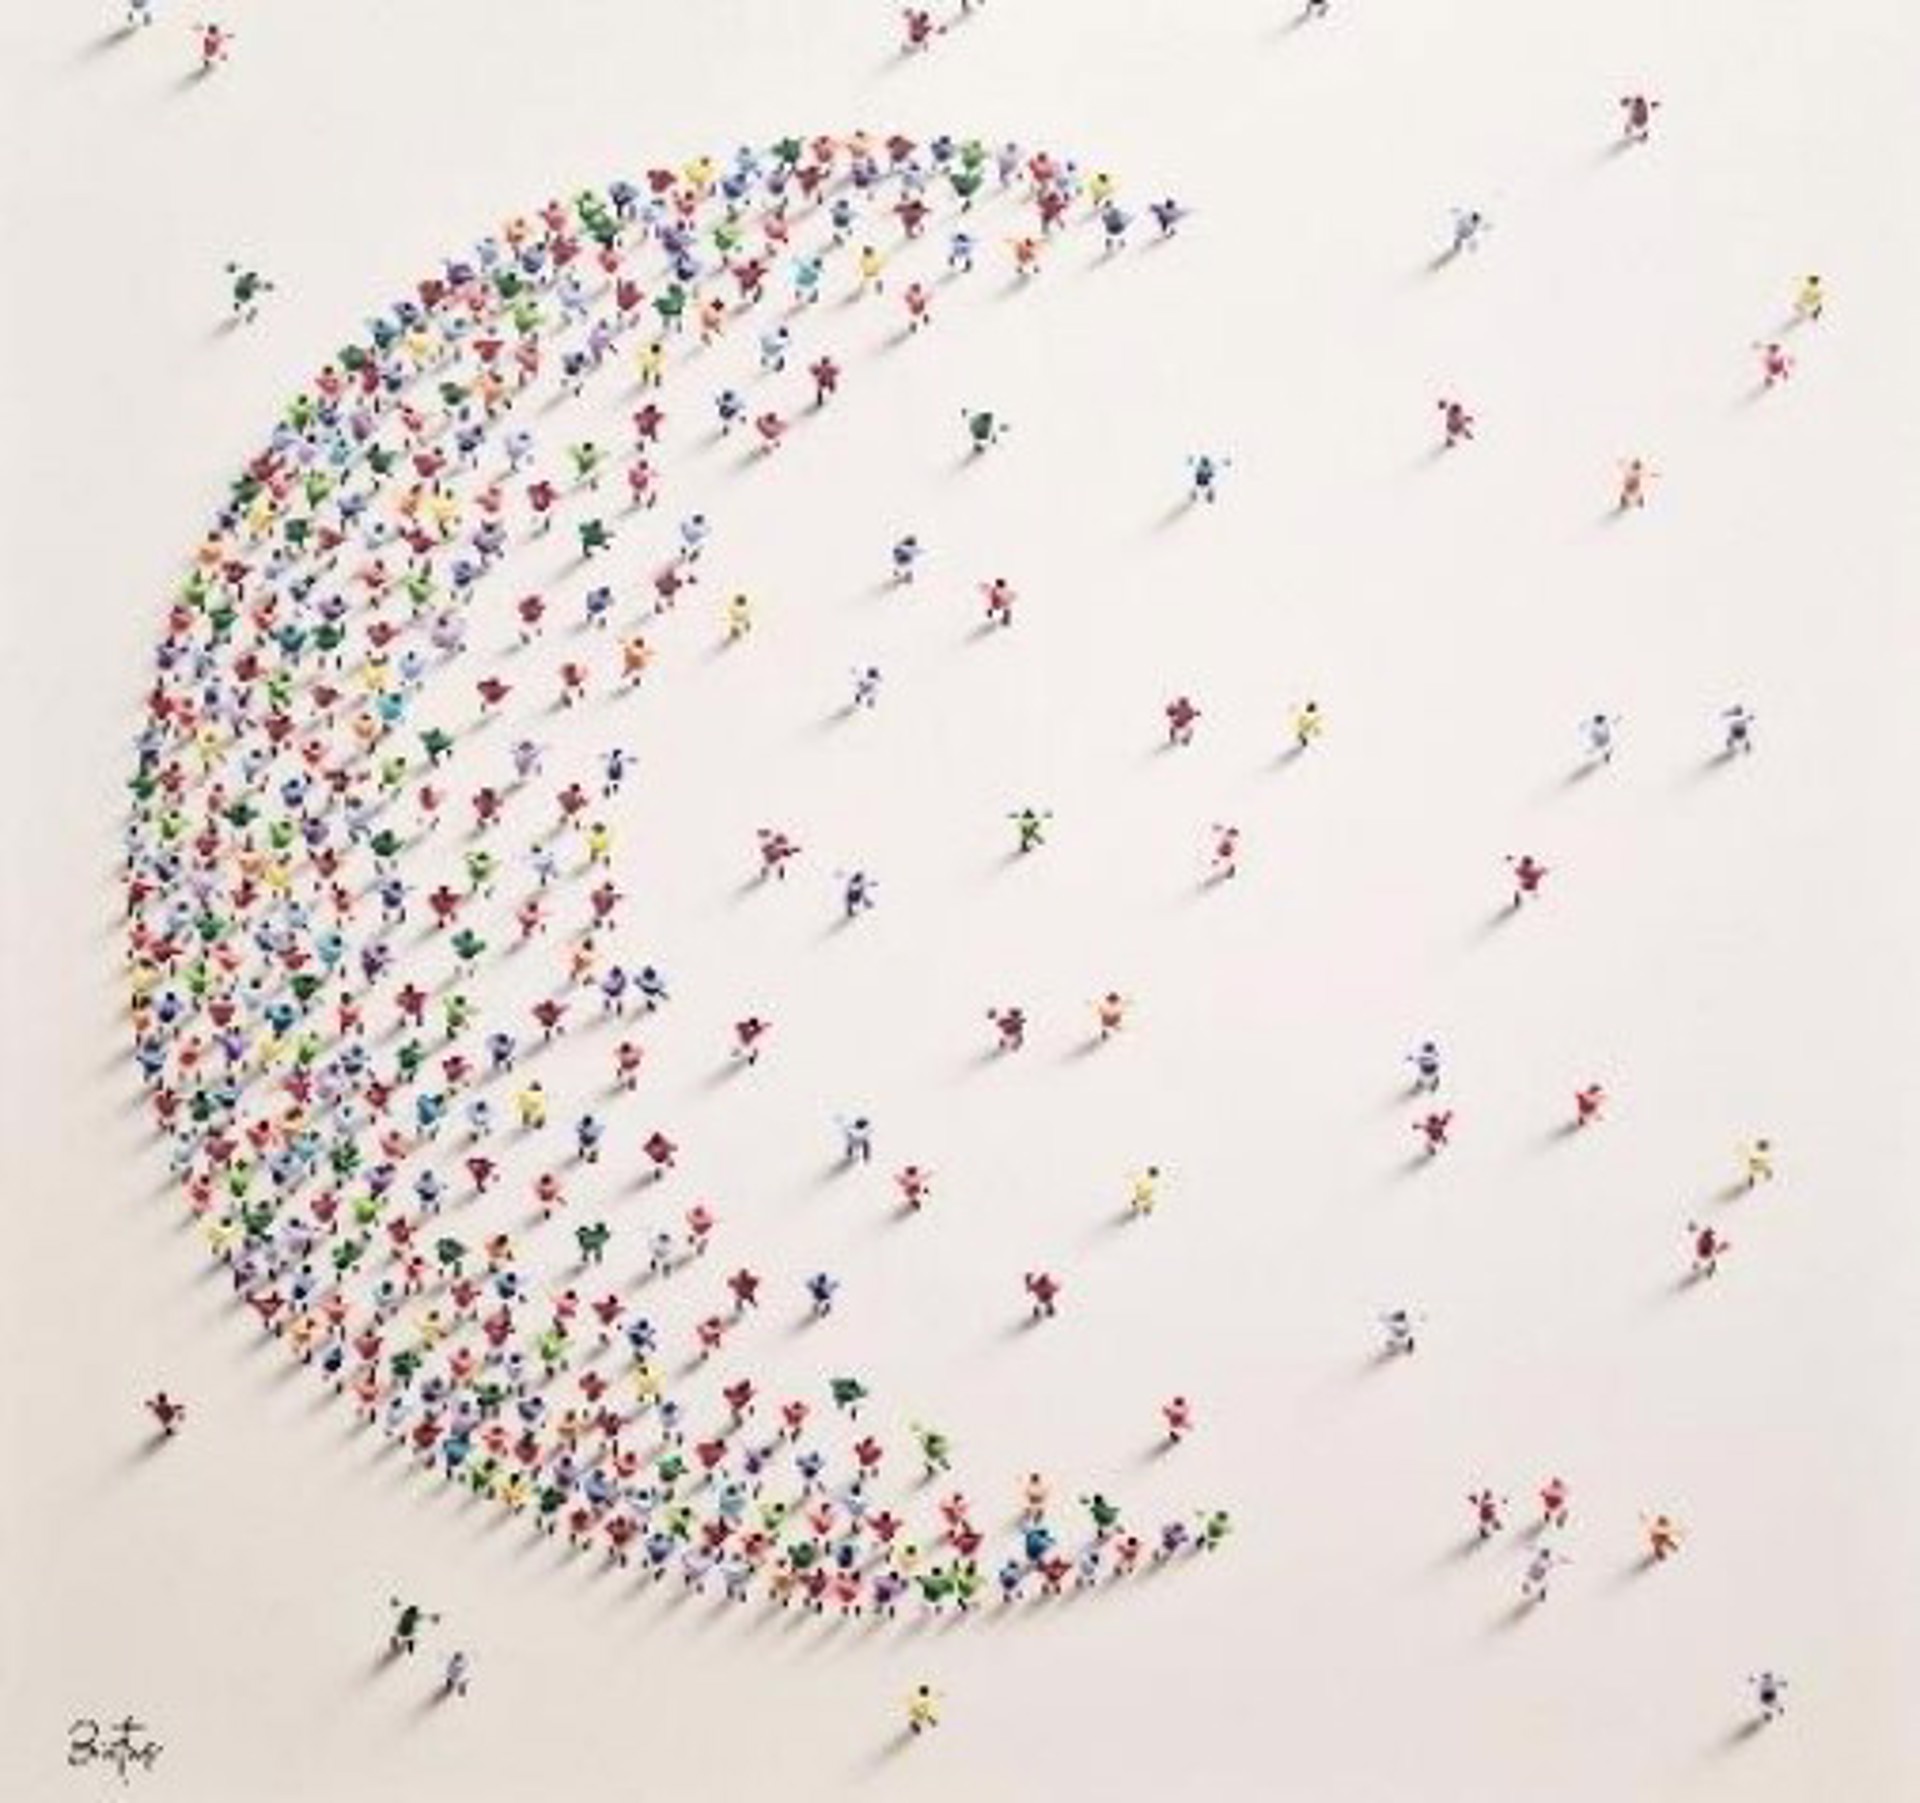 Moon by Francisco Bartus